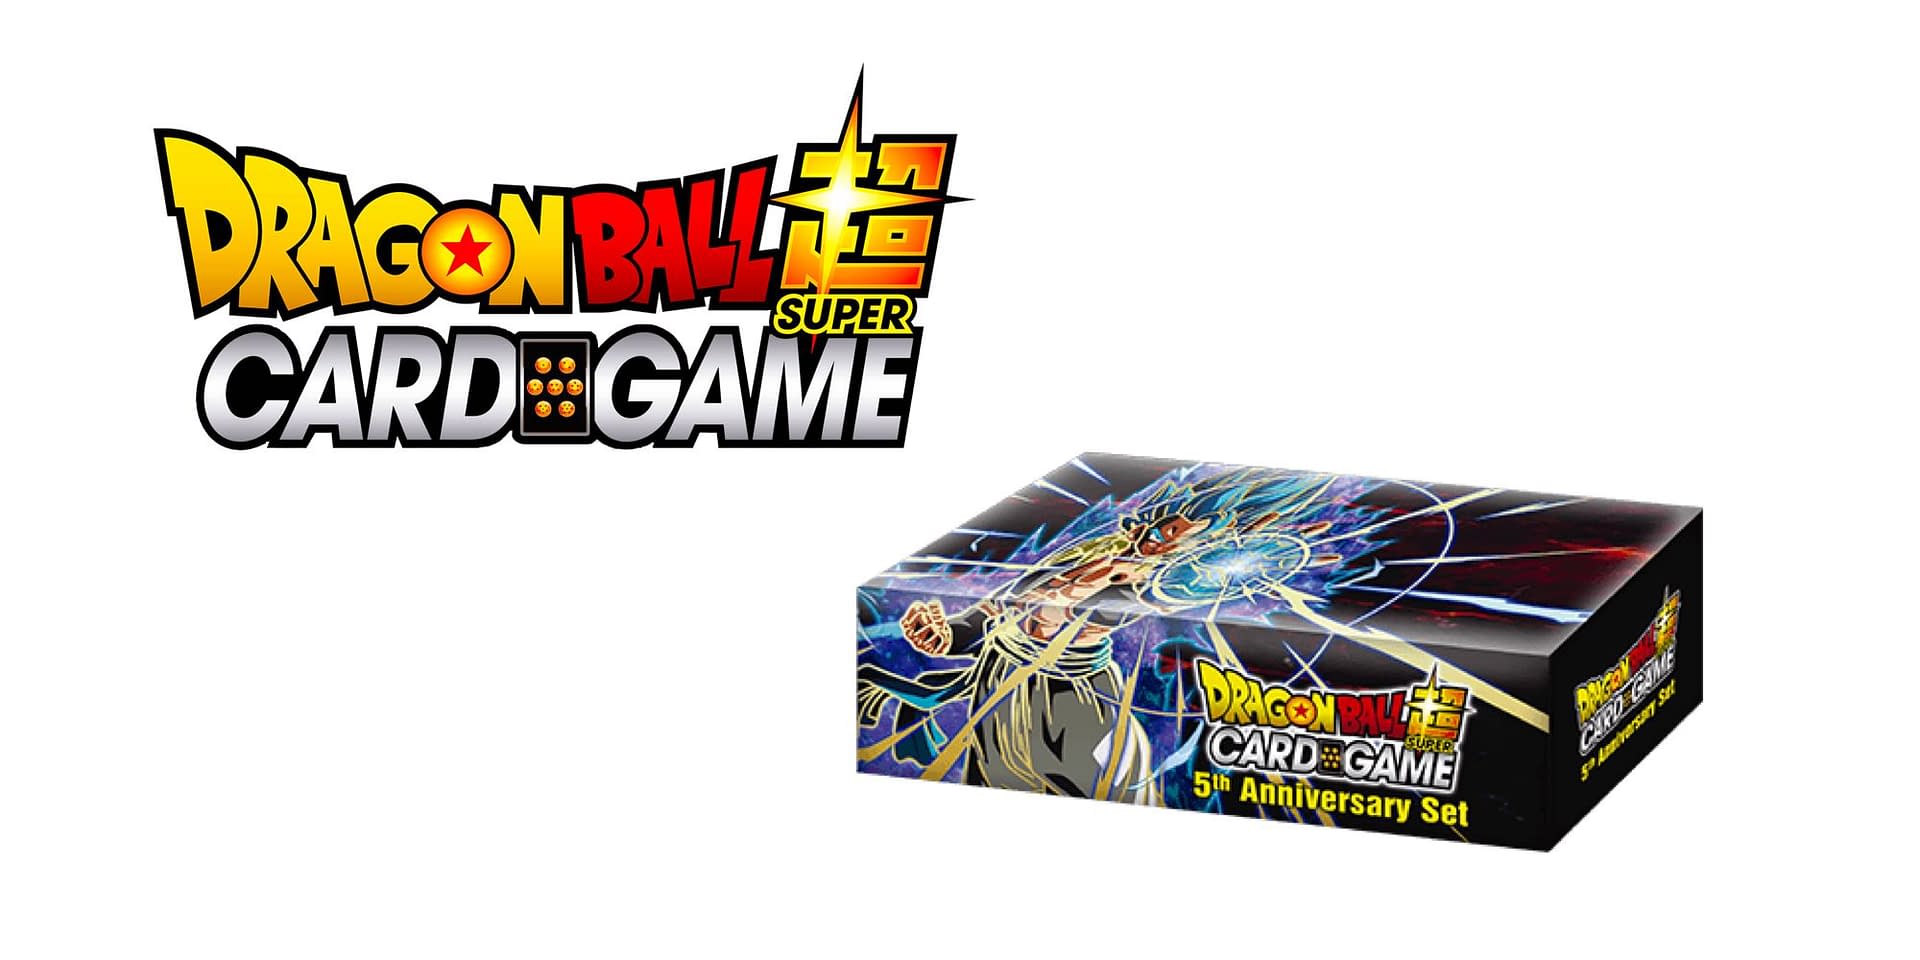 Dragon Ball Super Card Game Announces 5th Anniversary Set